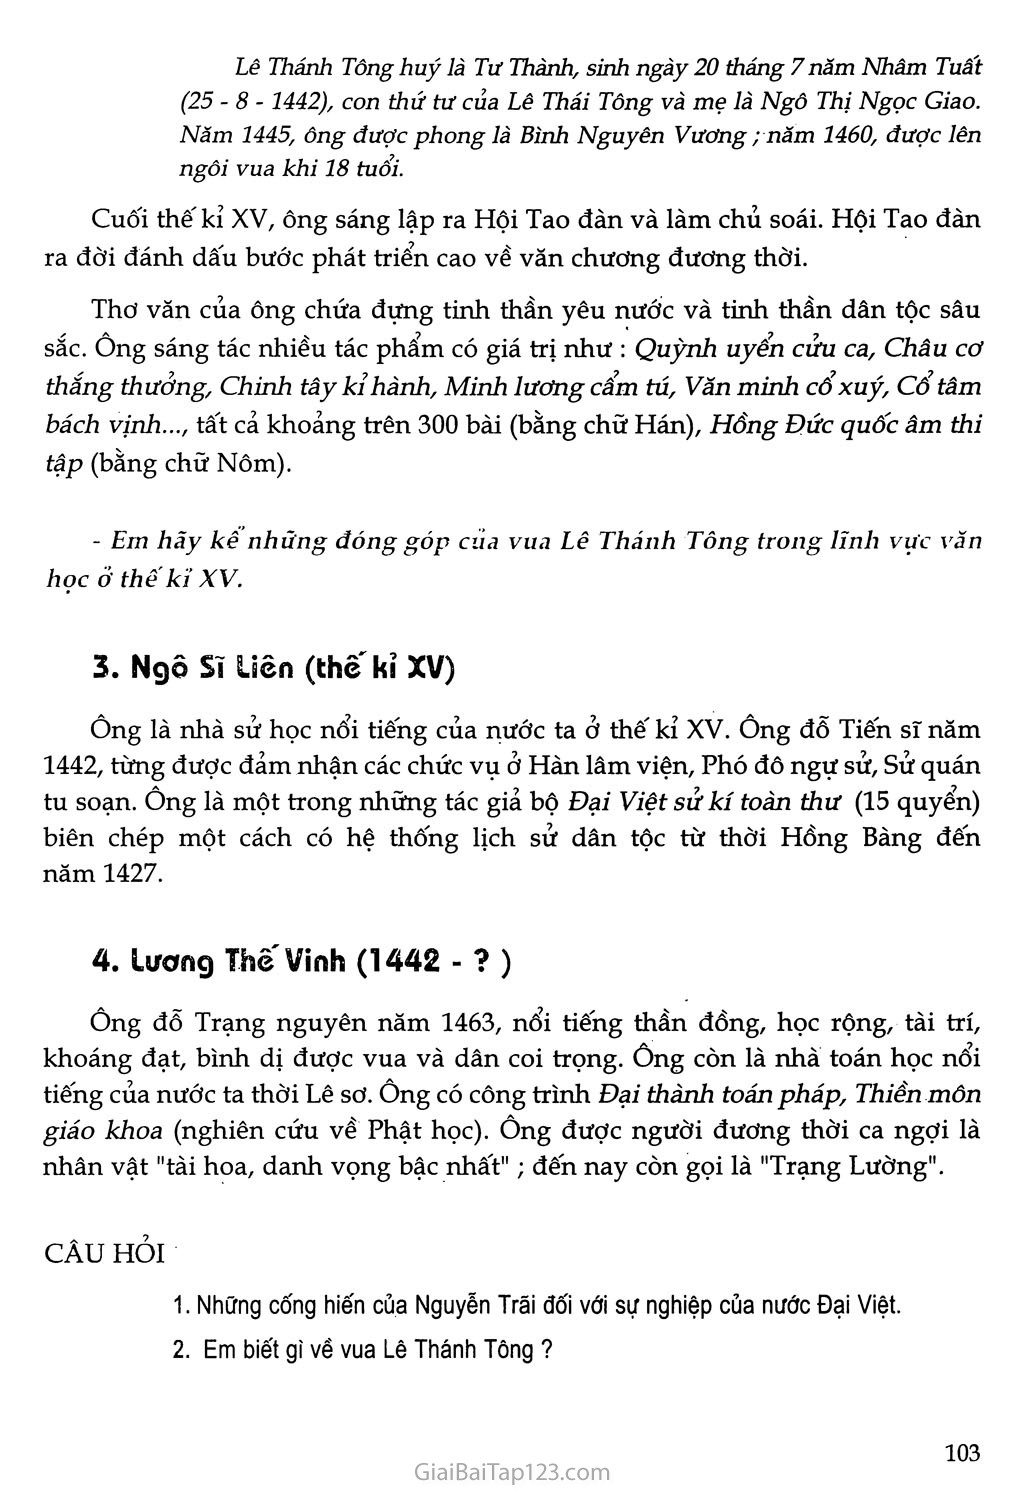 Bài 20 - Nước Đại Việt thời Lê sơ (1428 - 1527) trang 10